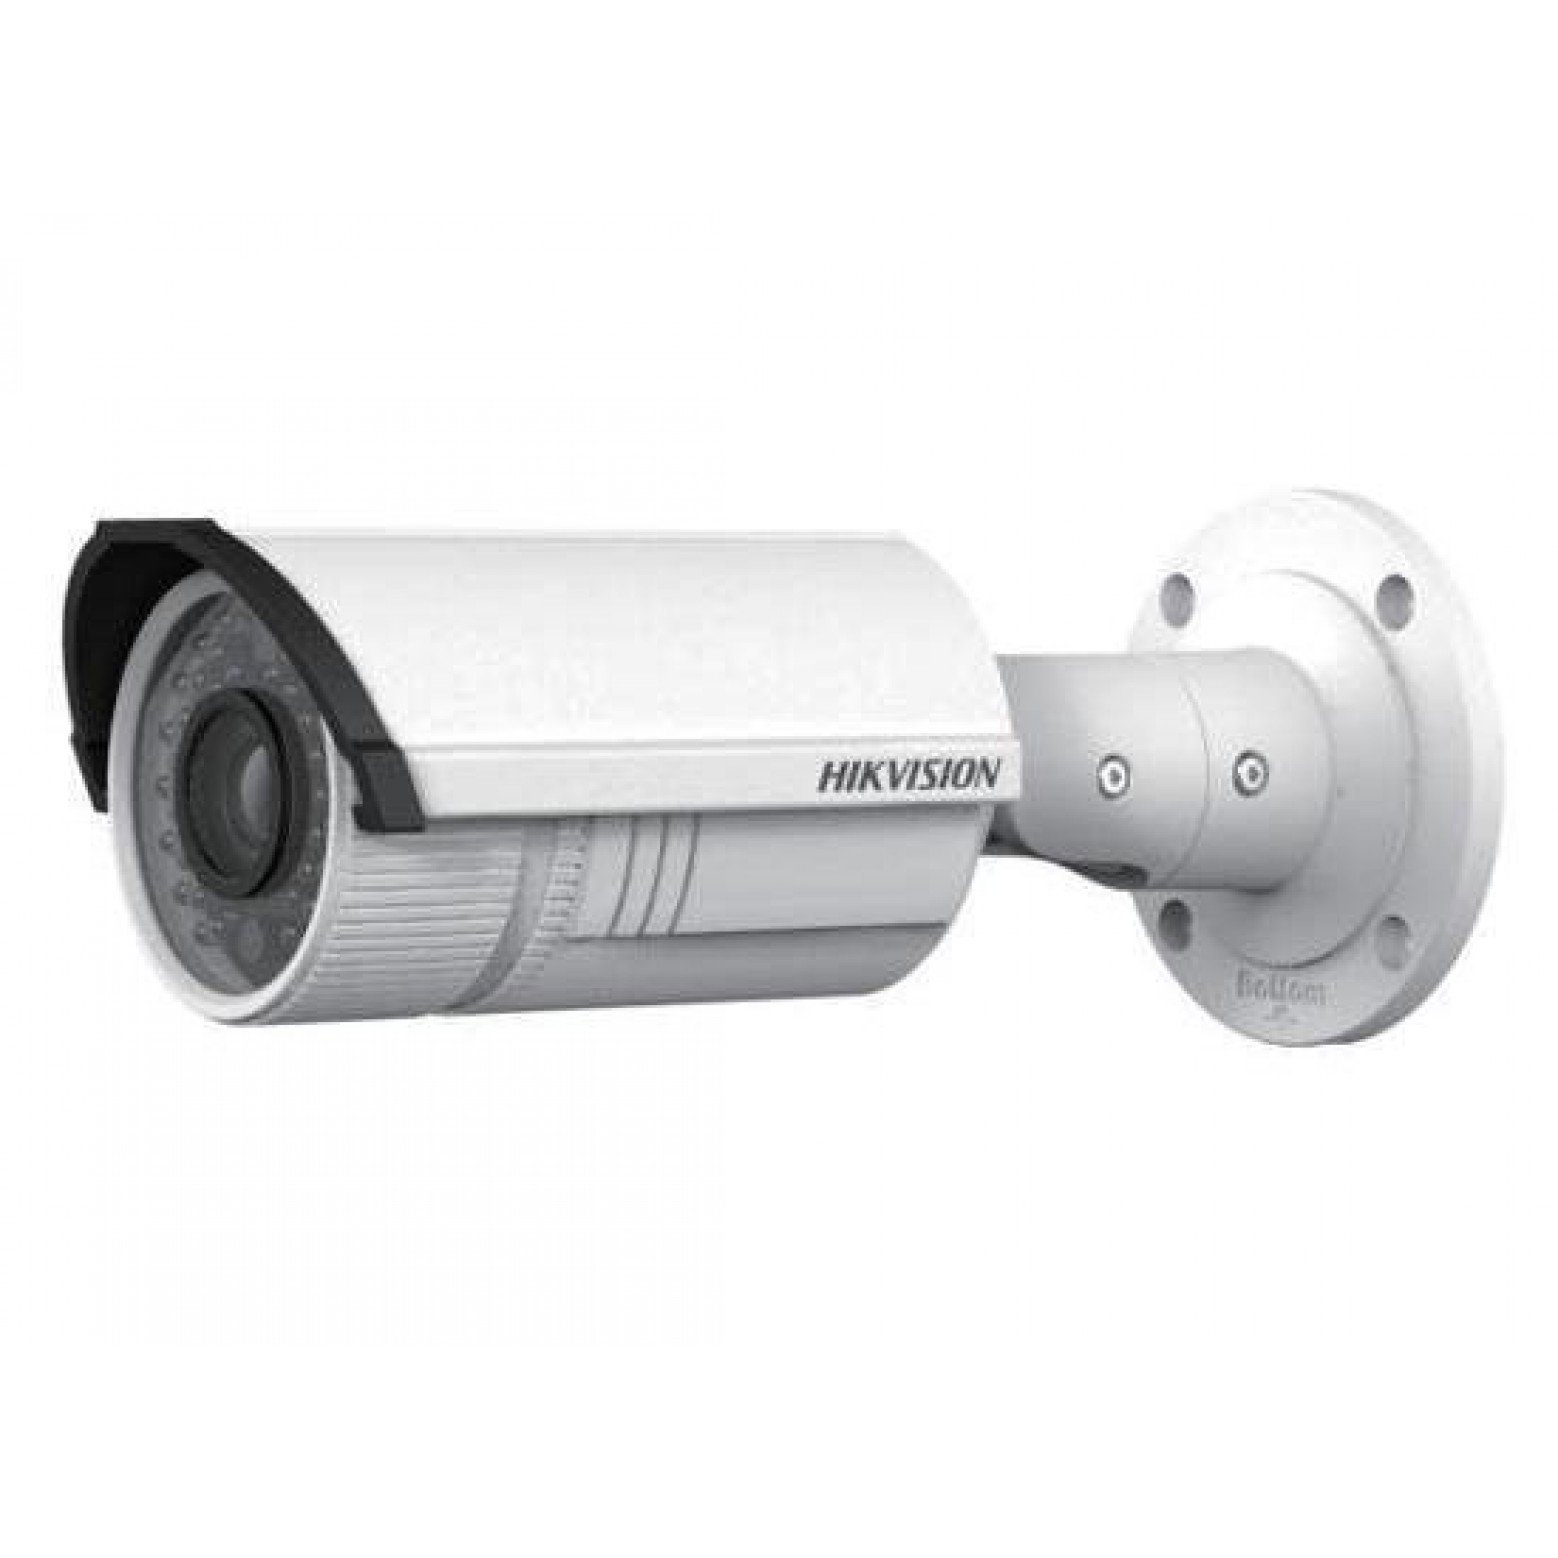 Hikvision DS-2CD2622FWD-IZS Motorzoom varifocale bullet camera, 2 Megapixel, 2,8-12mm lens, 30mtr IR, 120dB